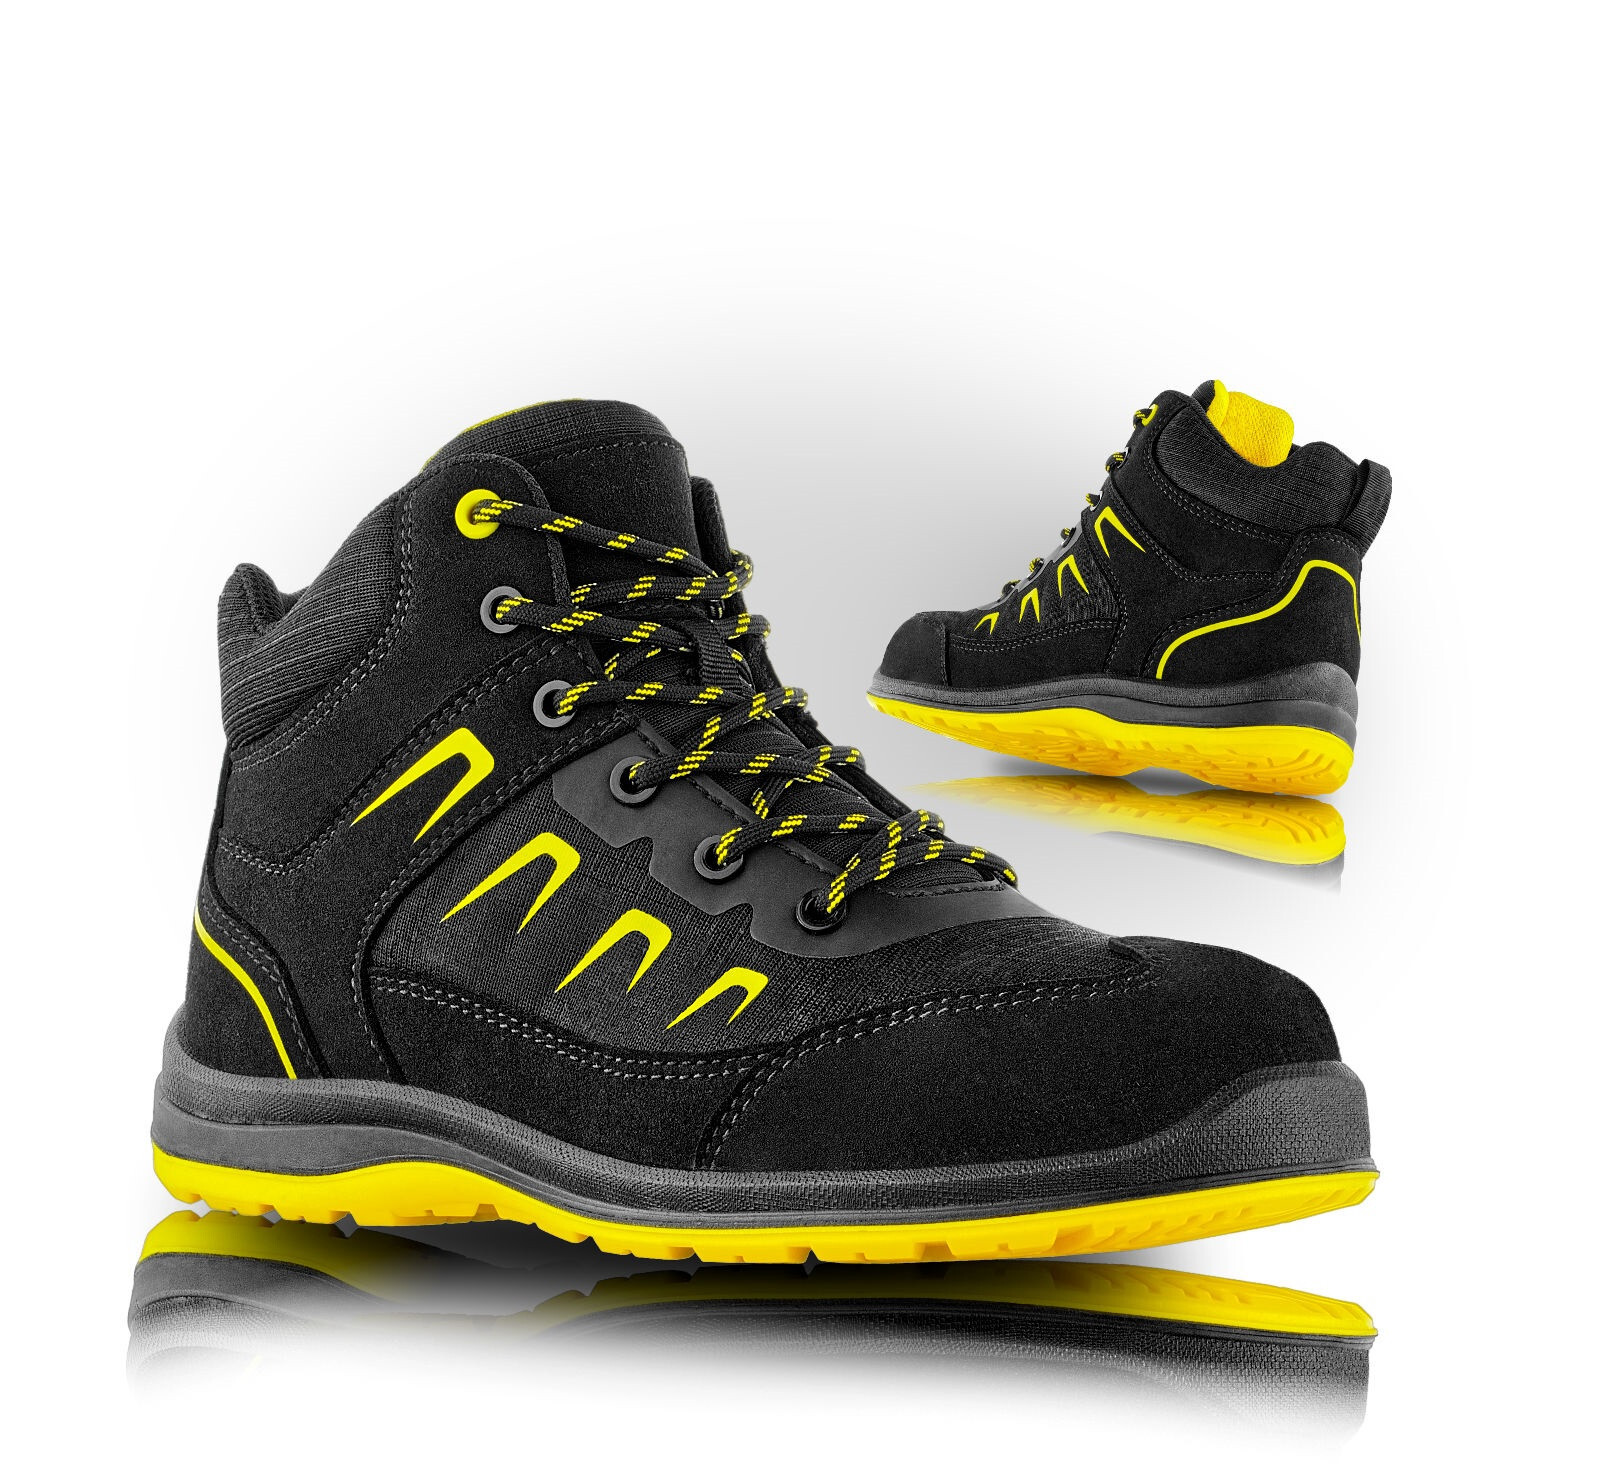 Bezpečnostná členková obuv VM Rhodos S3 ESD SRC - veľkosť: 39, farba: čierna/žltá